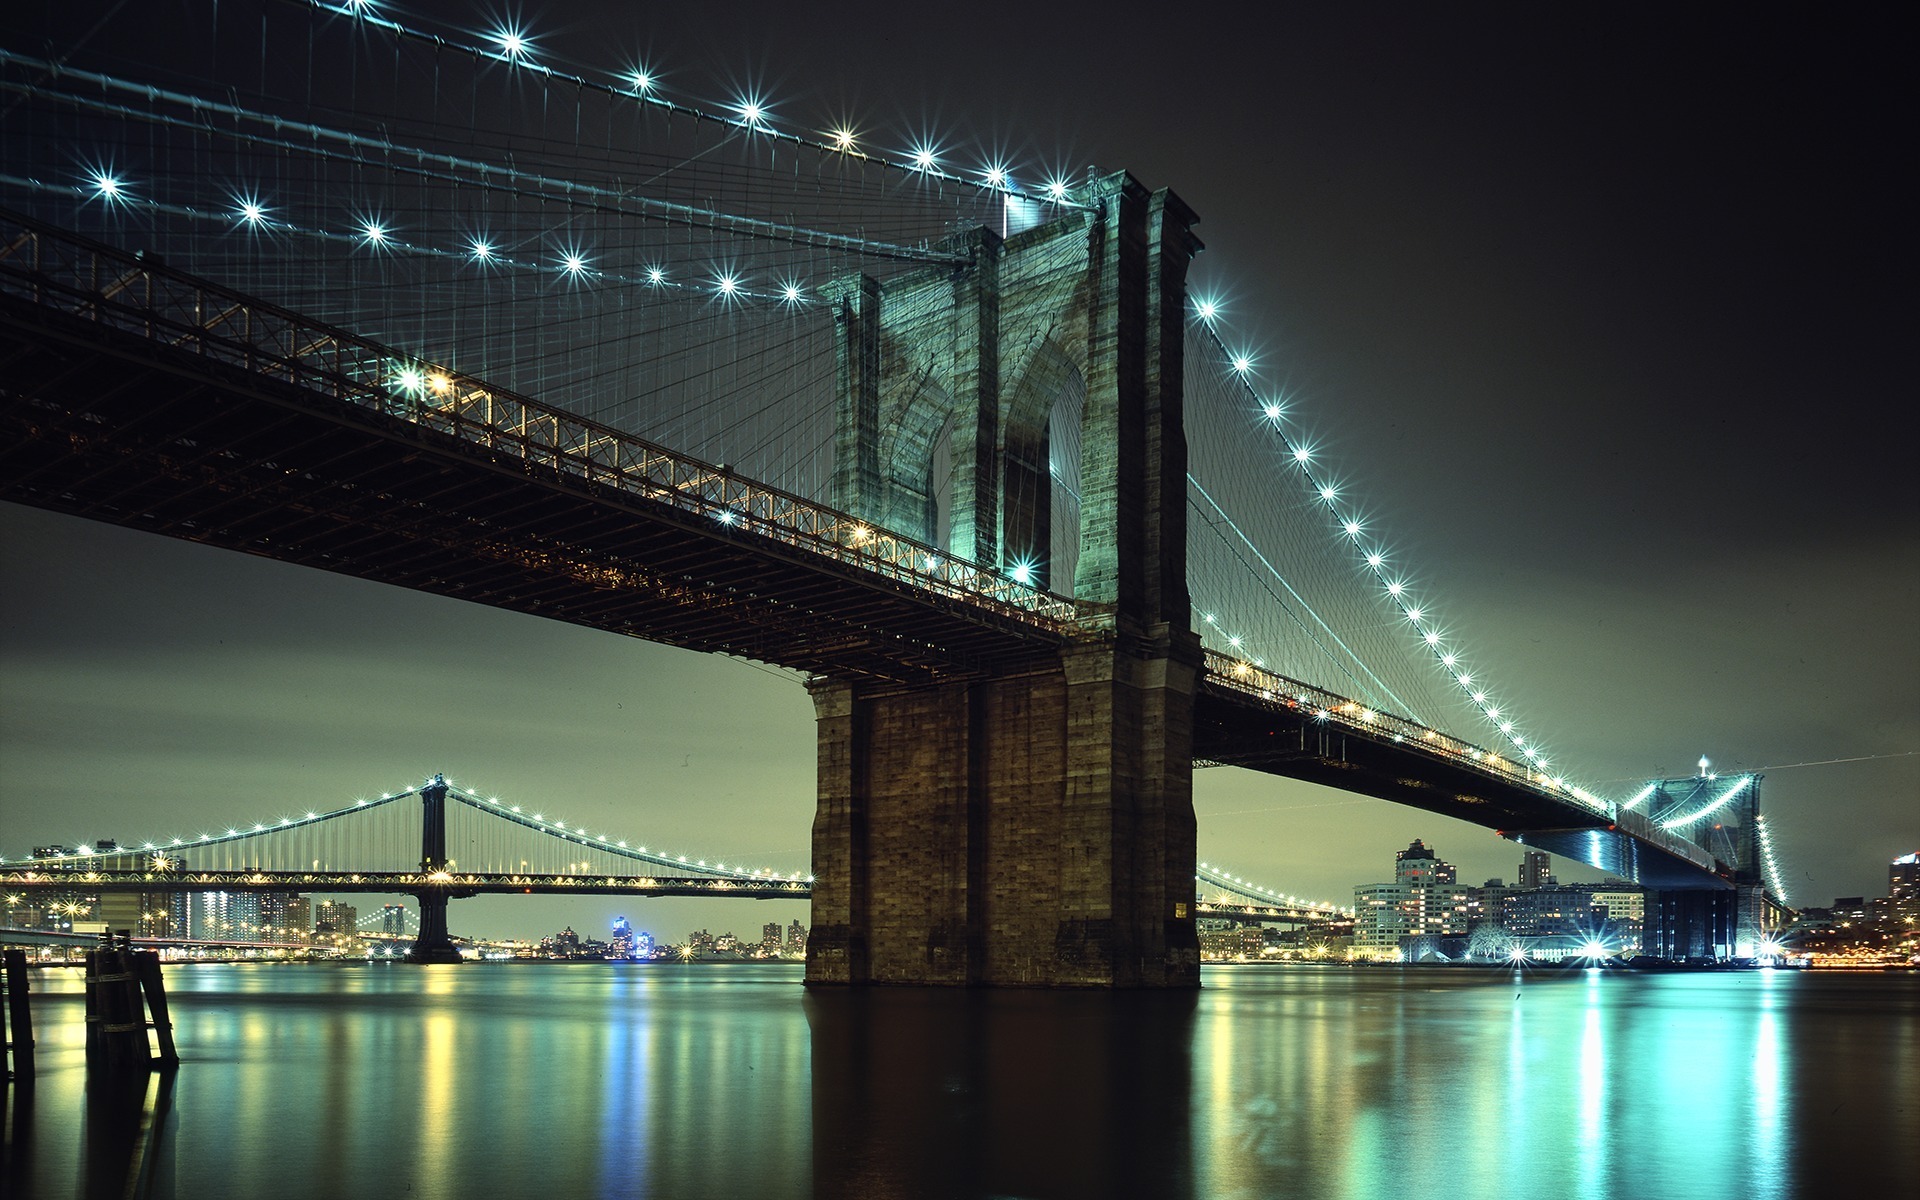 papier peint pont de brooklyn,pont,nuit,route aérienne,pont suspendu,ciel